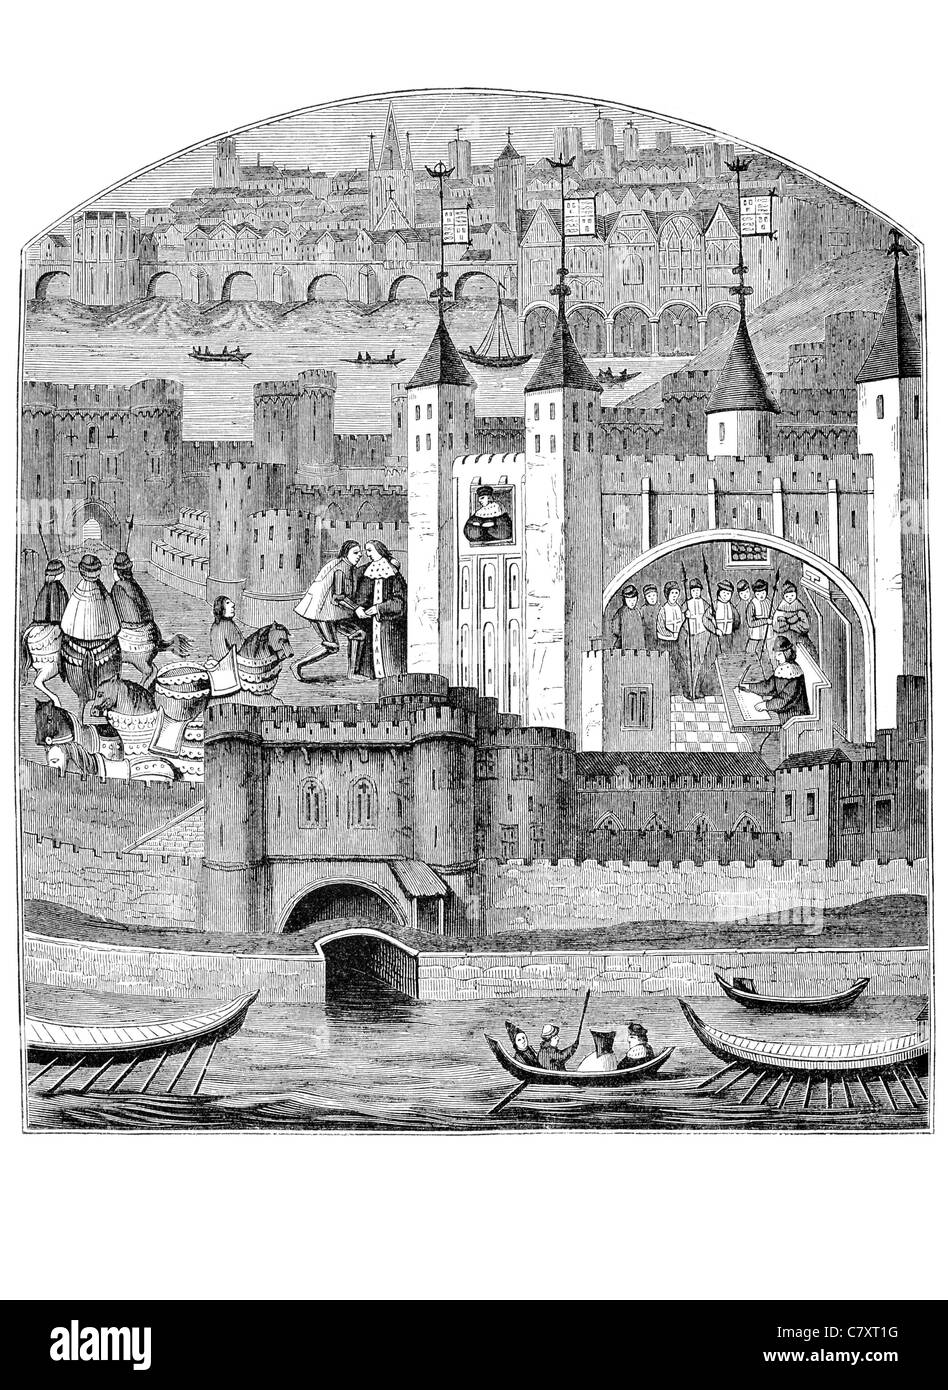 15e 15e siècle London Windsor capitale Angleterre Royaume-Uni Union européenne Europe métropolitaine Tamise Banque D'Images